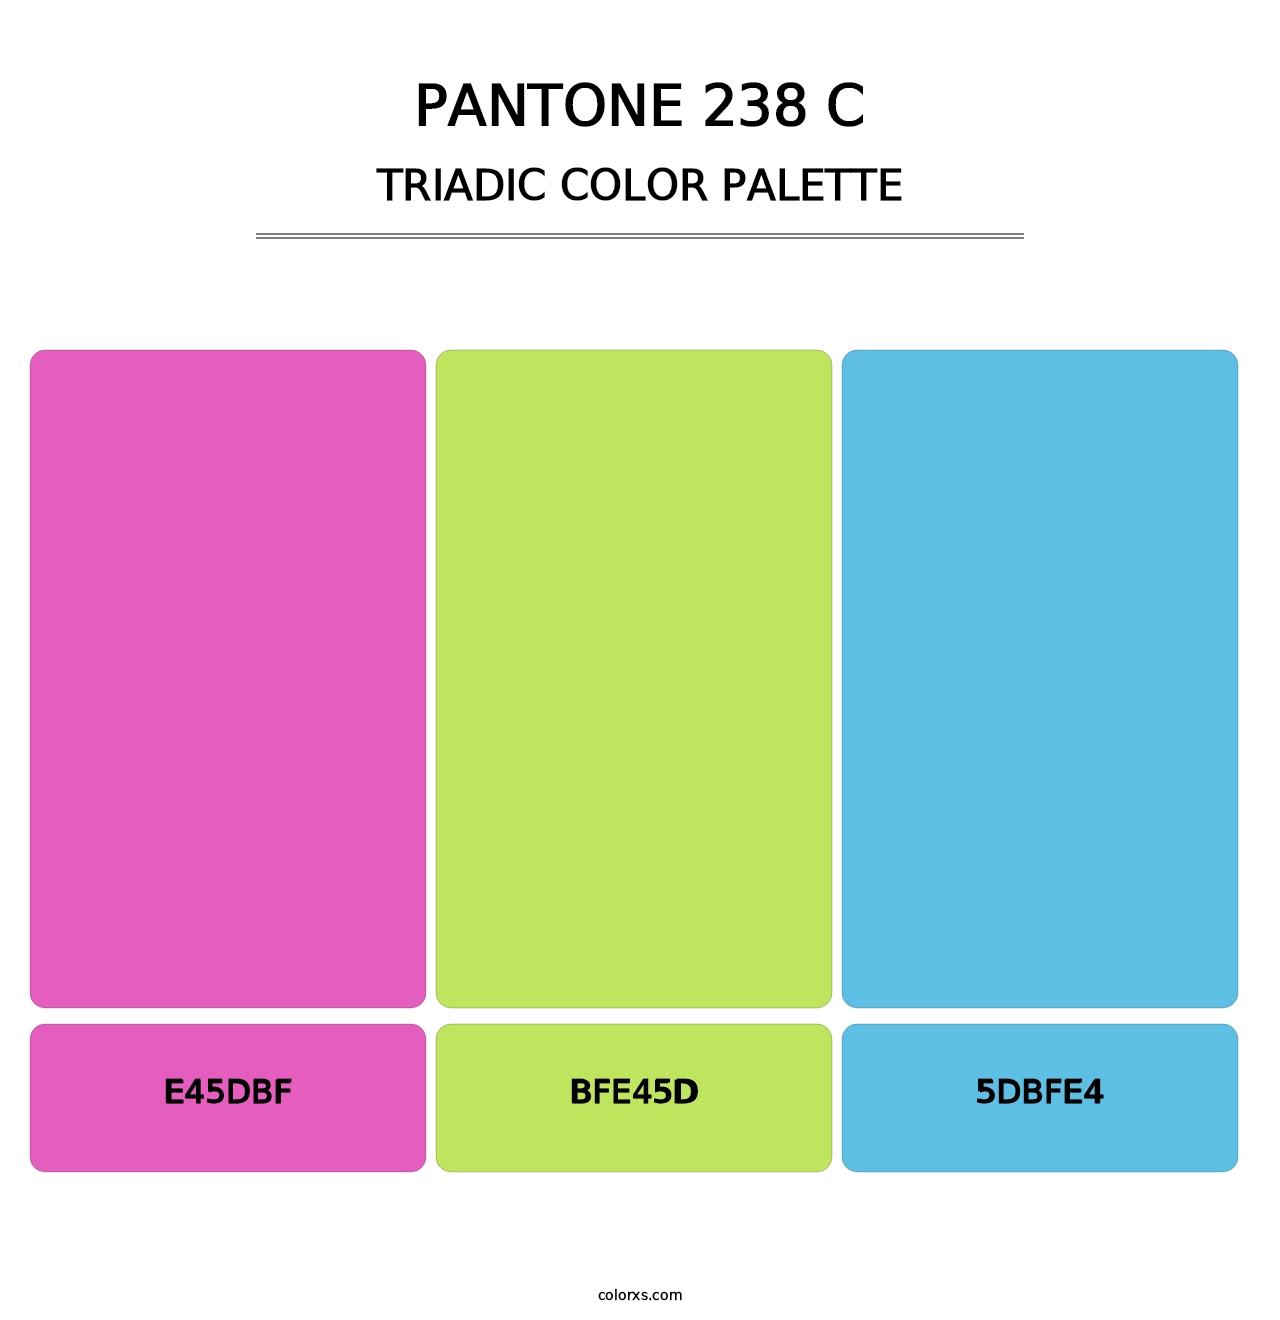 PANTONE 238 C - Triadic Color Palette